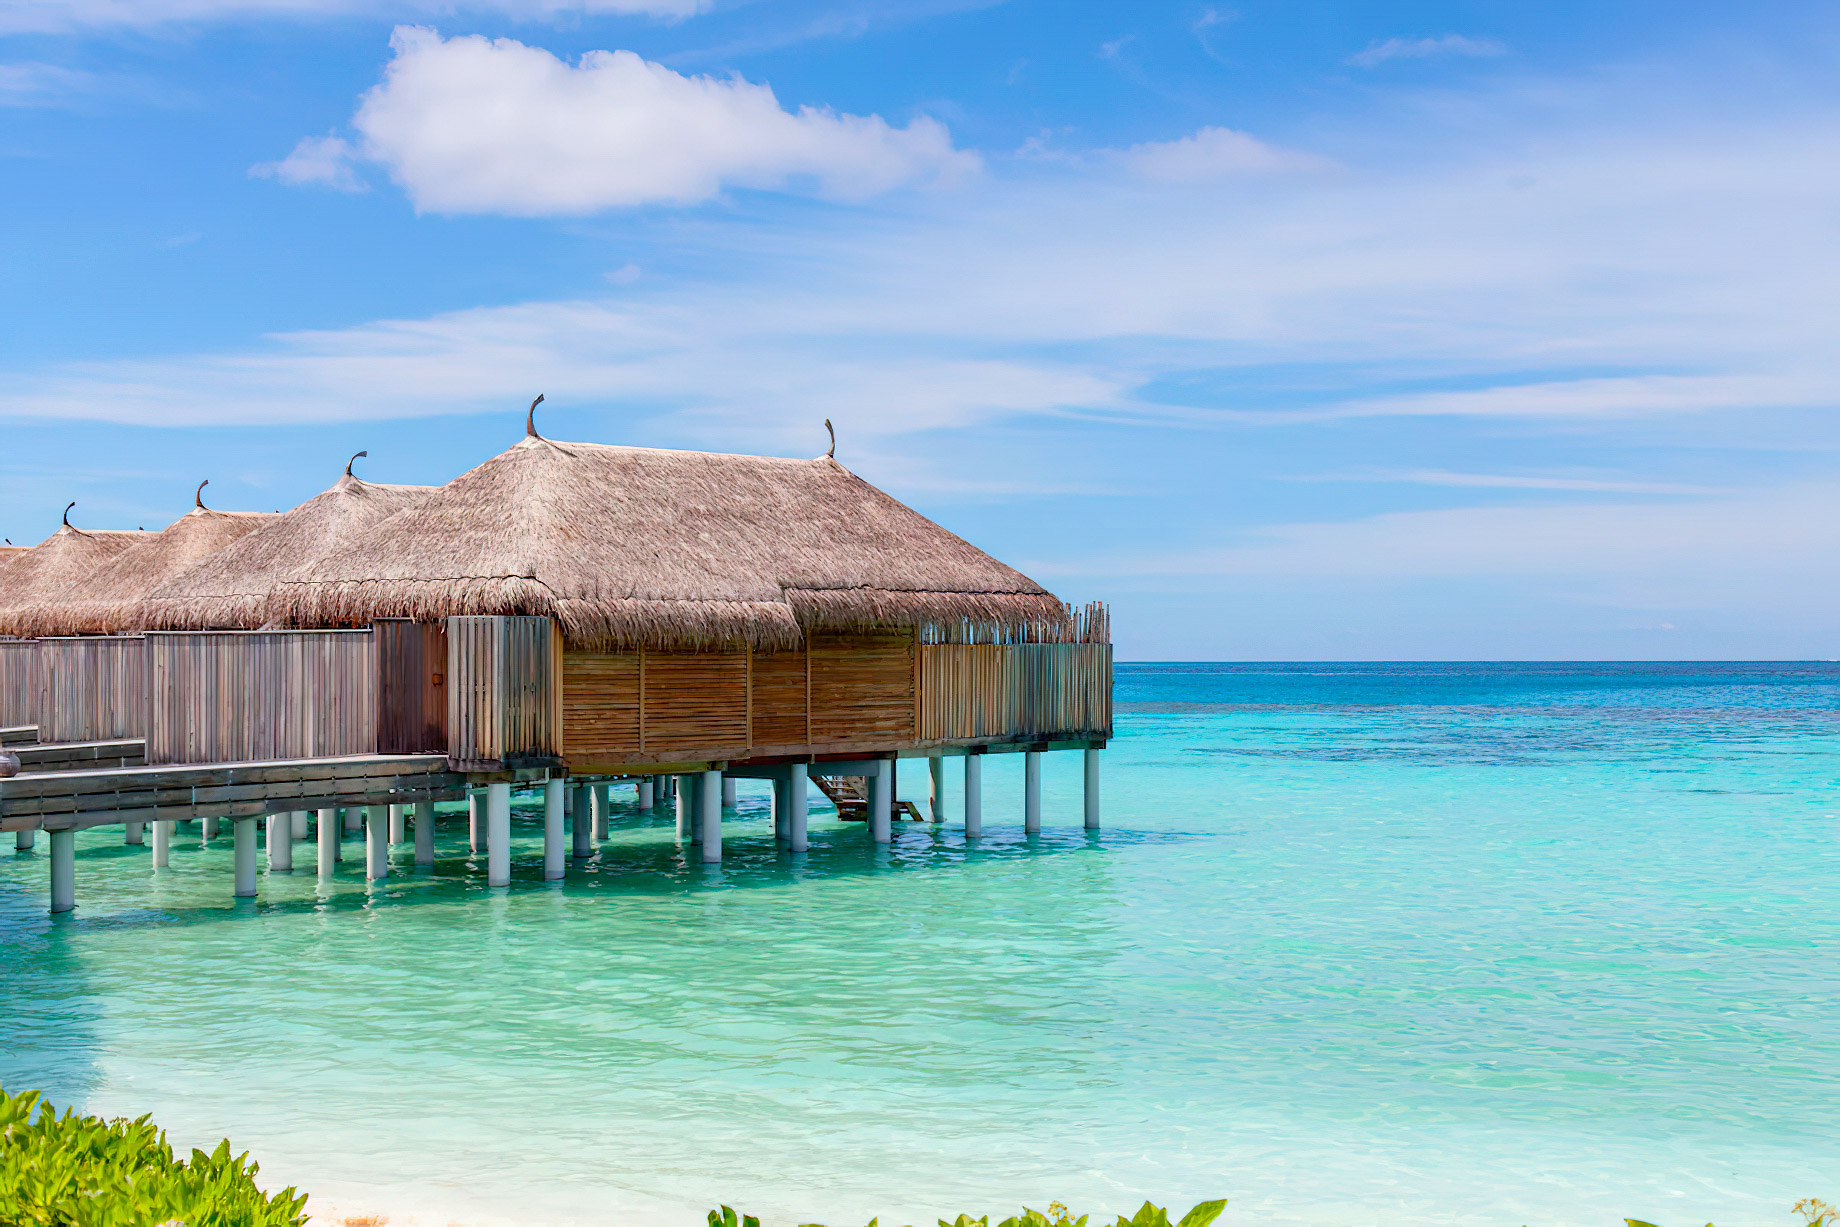 Constance Moofushi Resort – South Ari Atoll, Maldives – Overwater Villa View